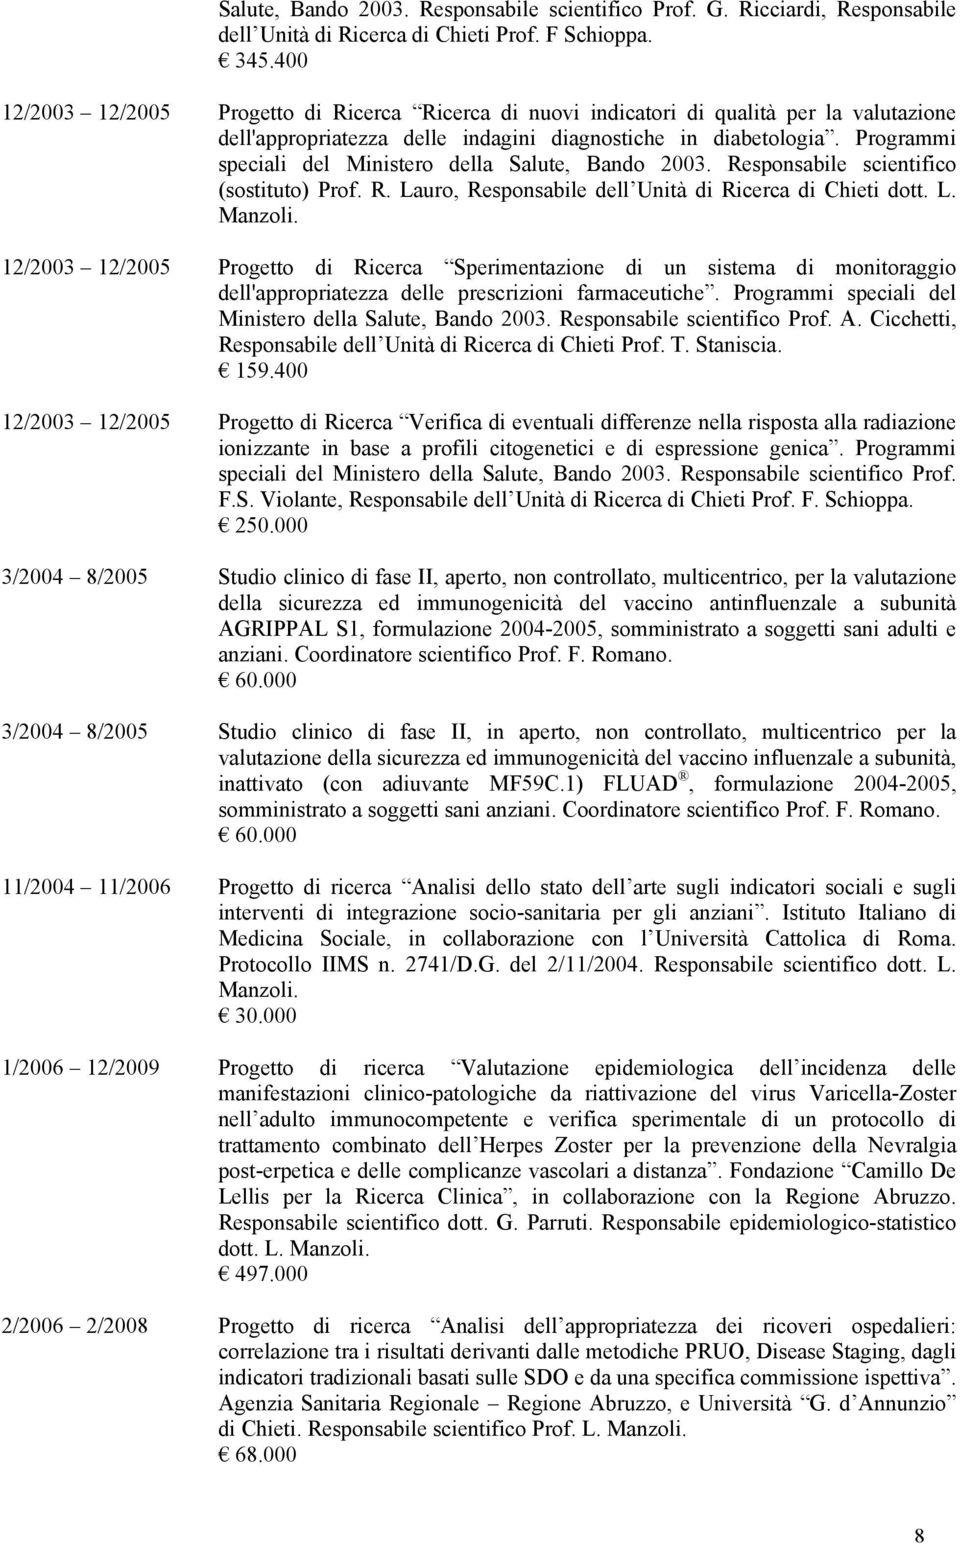 Programmi speciali del Ministero della Salute, Bando 2003. Responsabile scientifico (sostituto) Prof. R. Lauro, Responsabile dell Unità di Ricerca di Chieti dott. L. Manzoli.